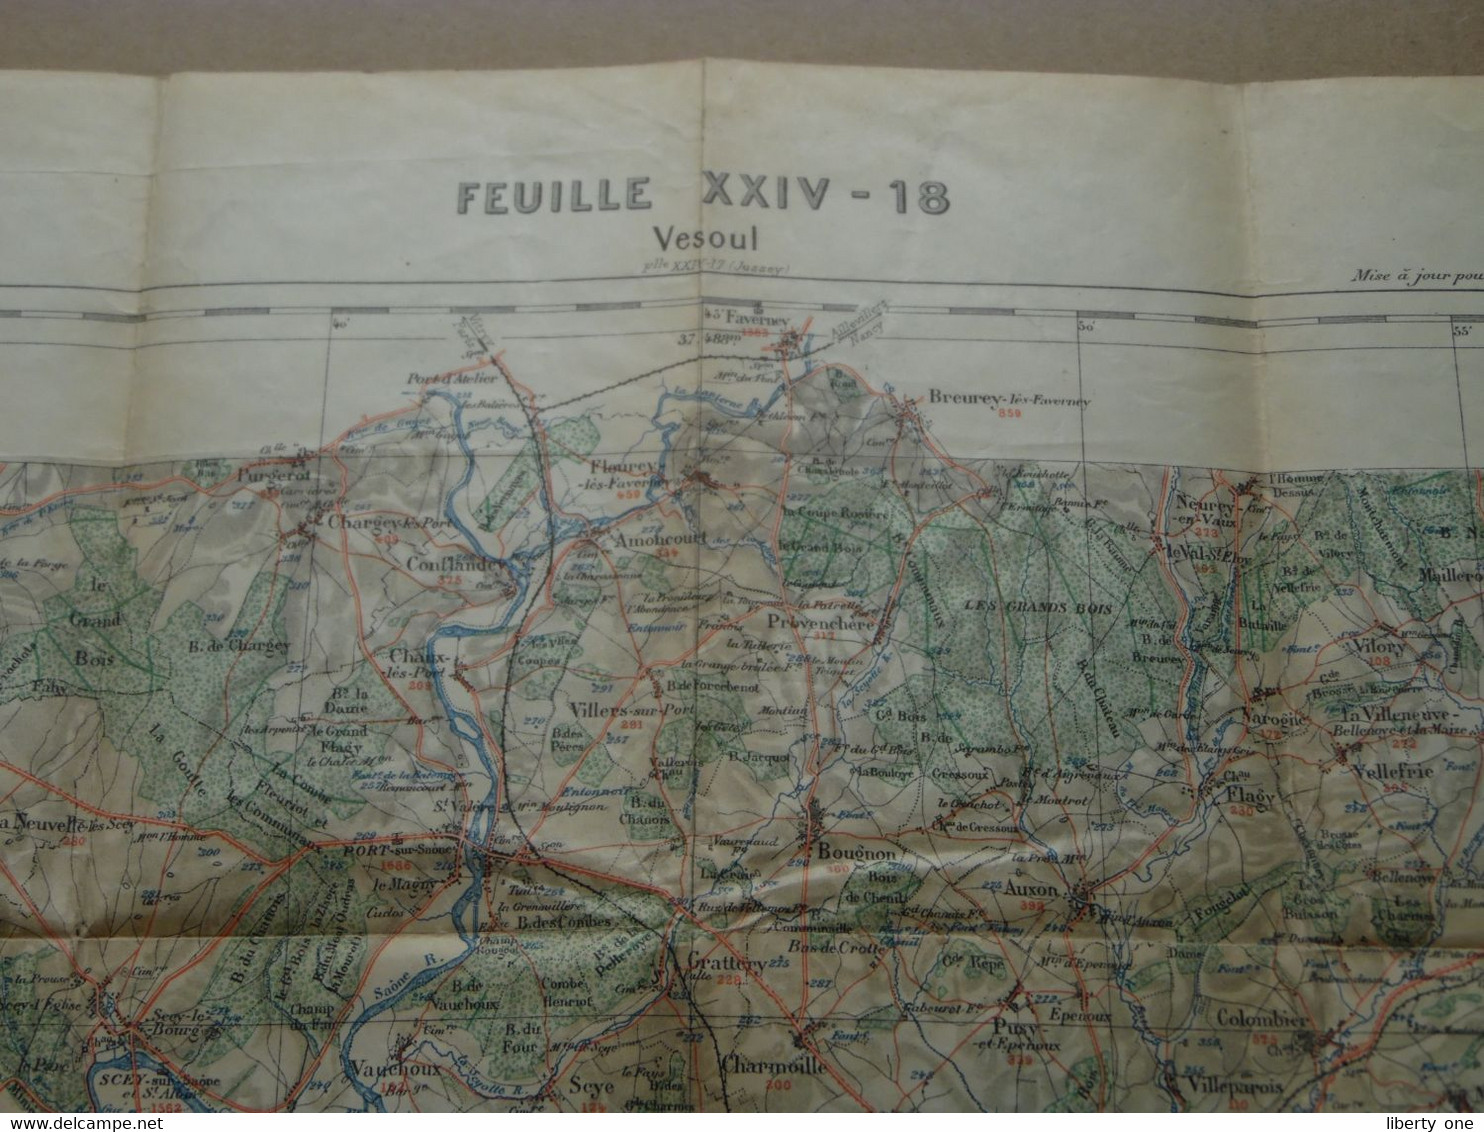 VESOUL - Feuille XXIV-18 " Tirage 1897 - 1/100.000 ( Lib. Hachette ) Voir Scans / Photos SVP ! - Europa